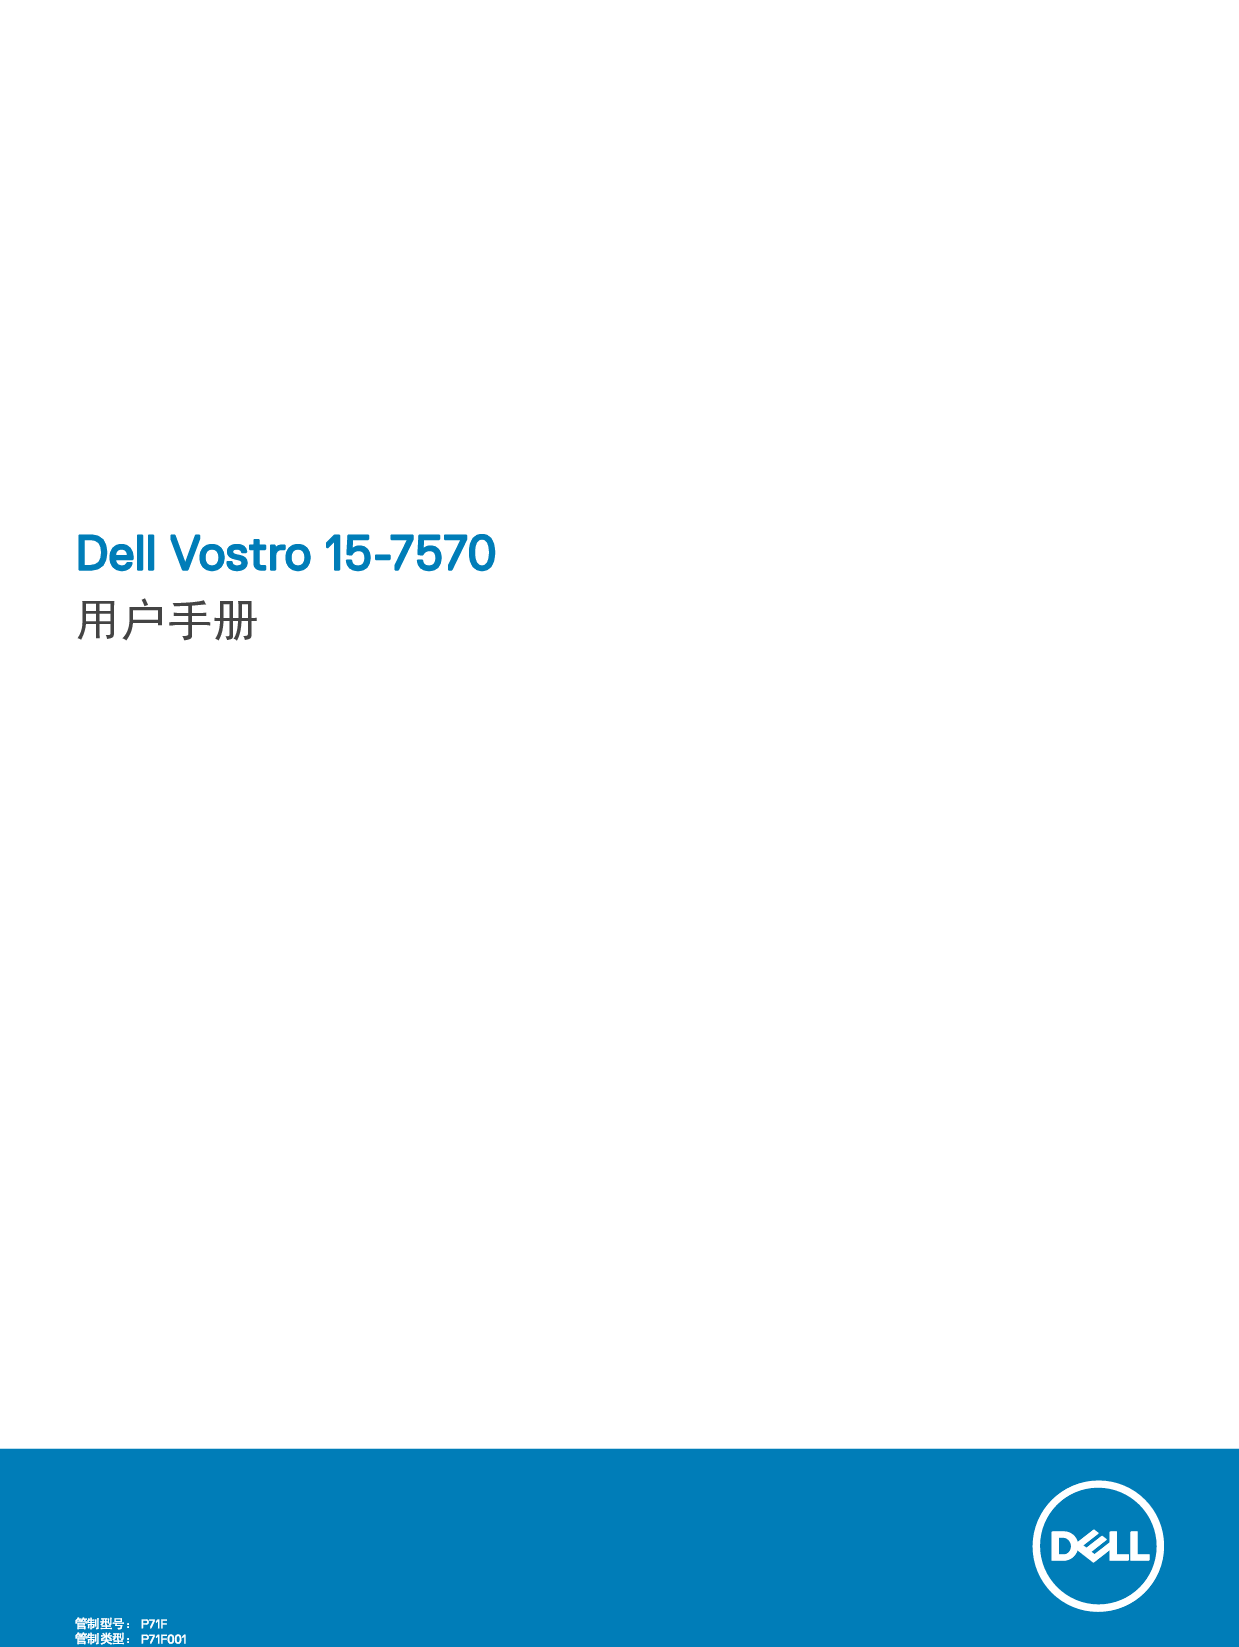 戴尔 Dell Vostro 15-7570 用户手册 封面